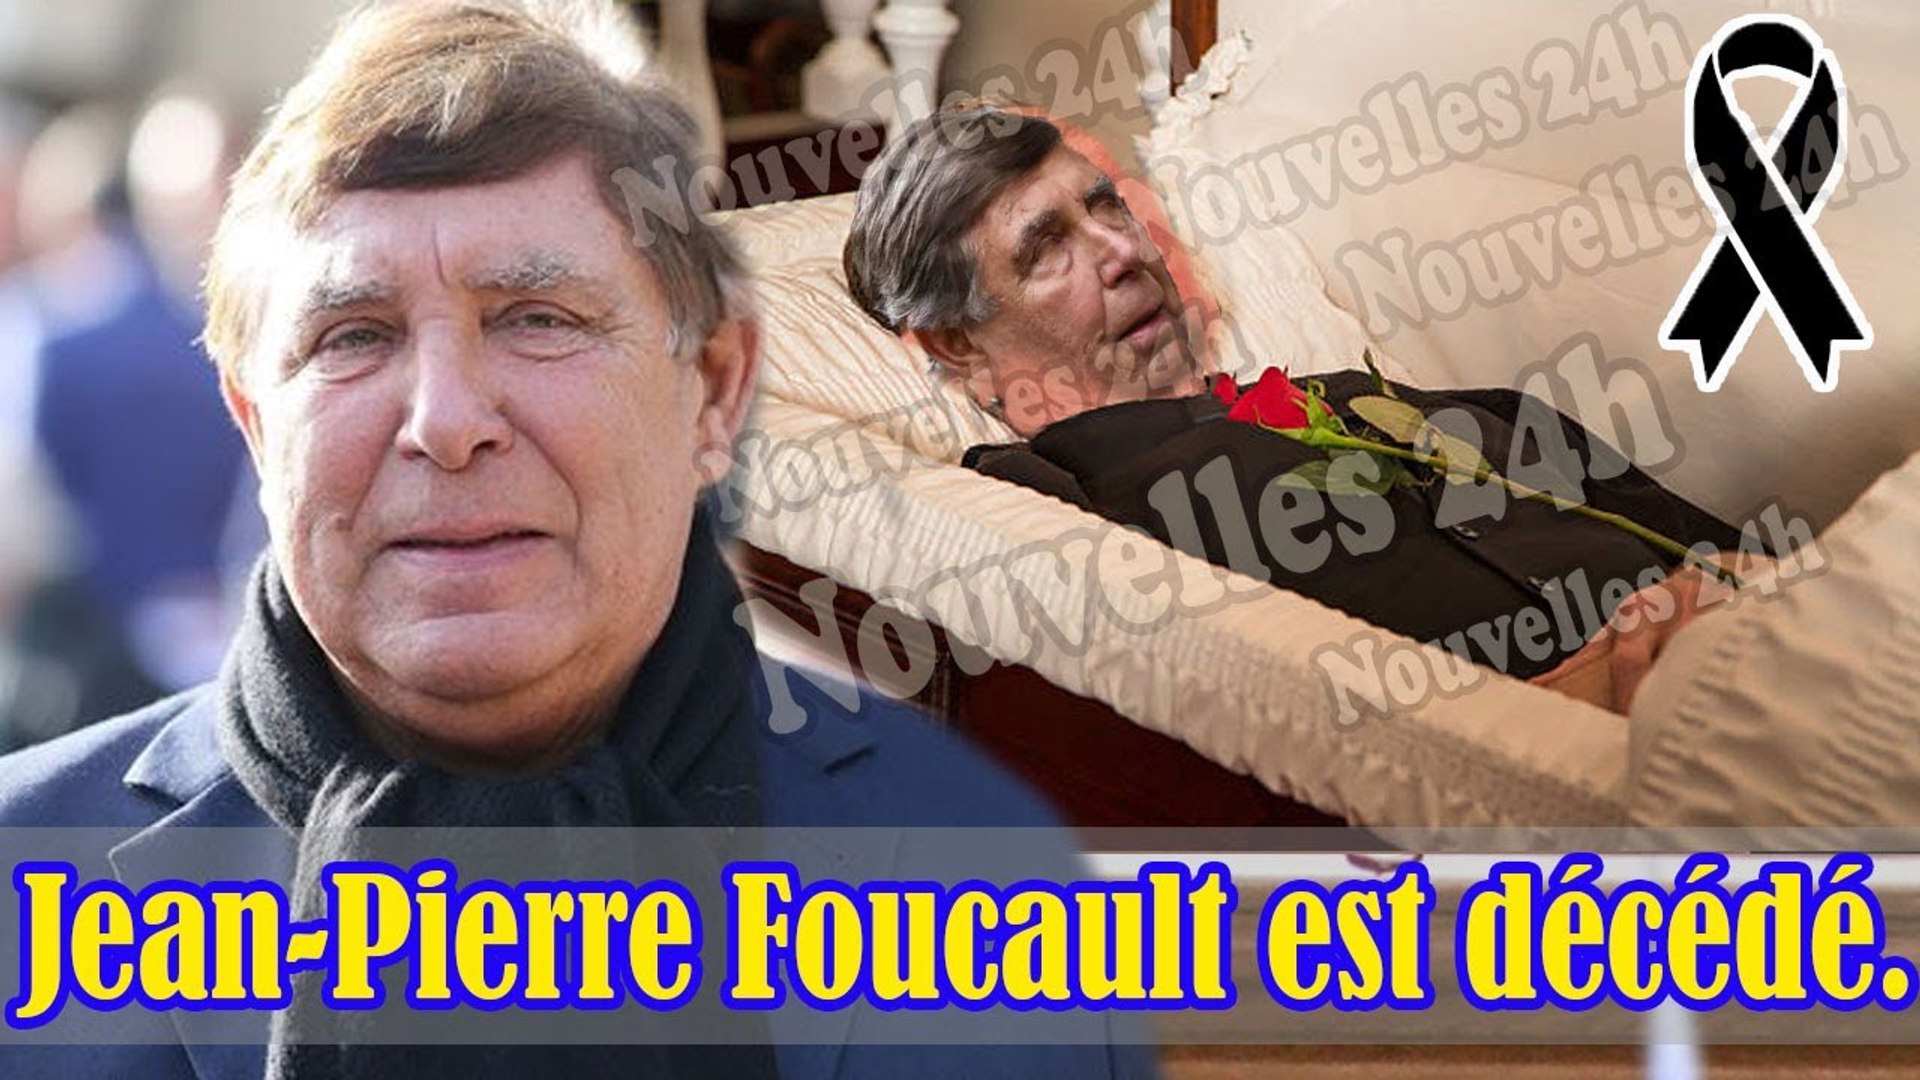 Jean-PierreFoucault a fait un AVC et est mort!Les funérailles ont lieu  secrètement pour cette raison - Vidéo Dailymotion